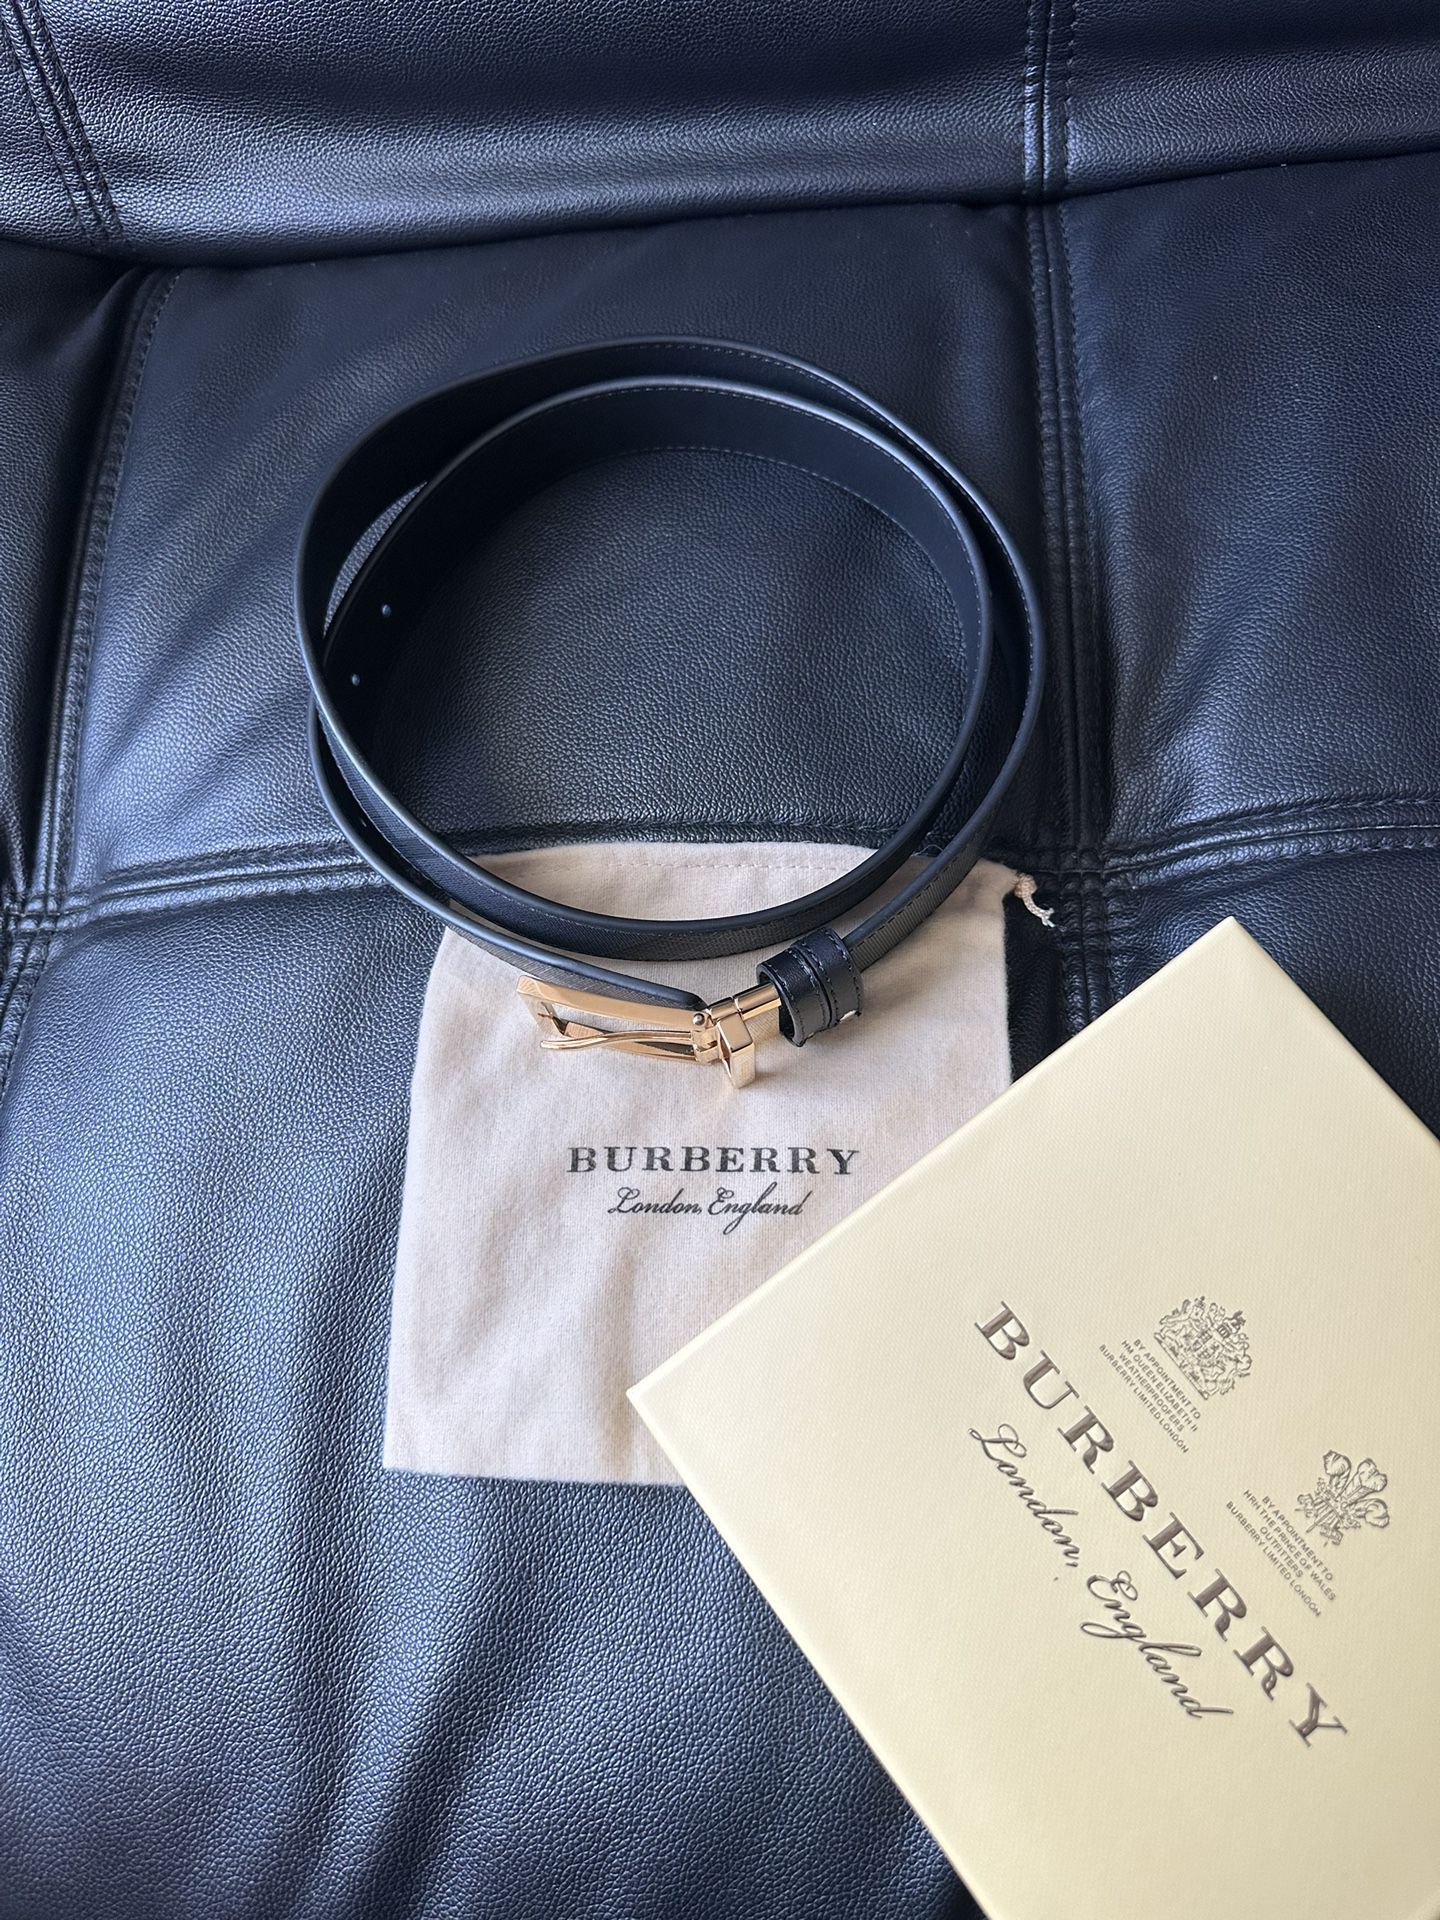 Burberry Belt for Sale in Meriden, CT - OfferUp